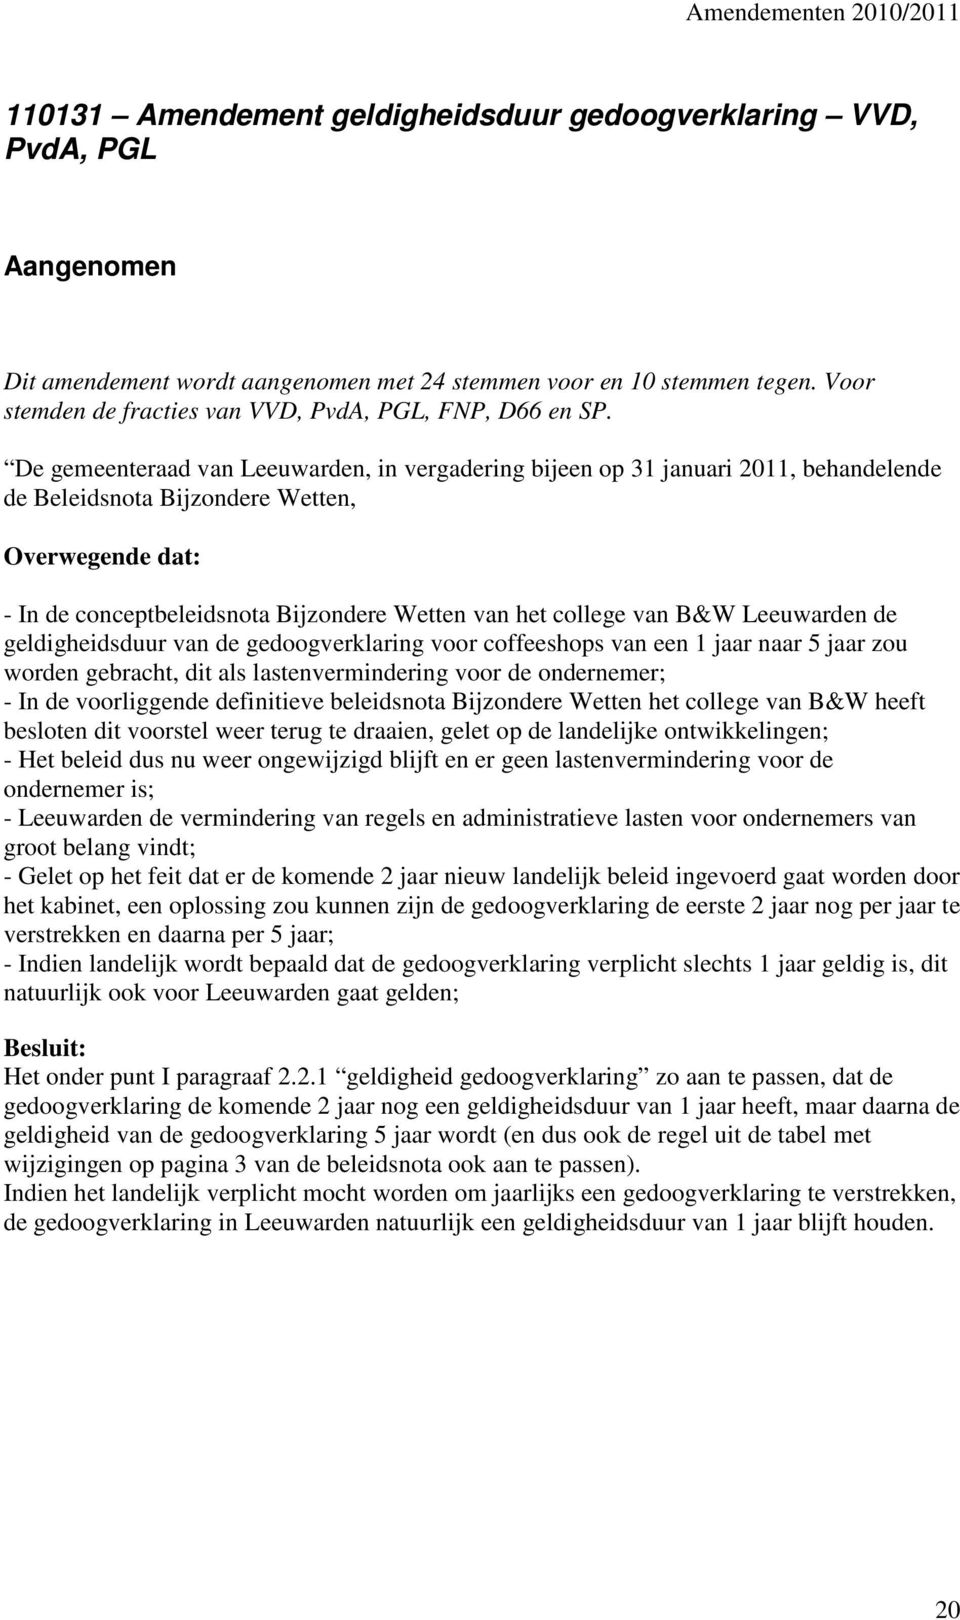 De gemeenteraad van Leeuwarden, in vergadering bijeen op 31 januari 2011, behandelende de Beleidsnota Bijzondere Wetten, Overwegende dat: - In de conceptbeleidsnota Bijzondere Wetten van het college